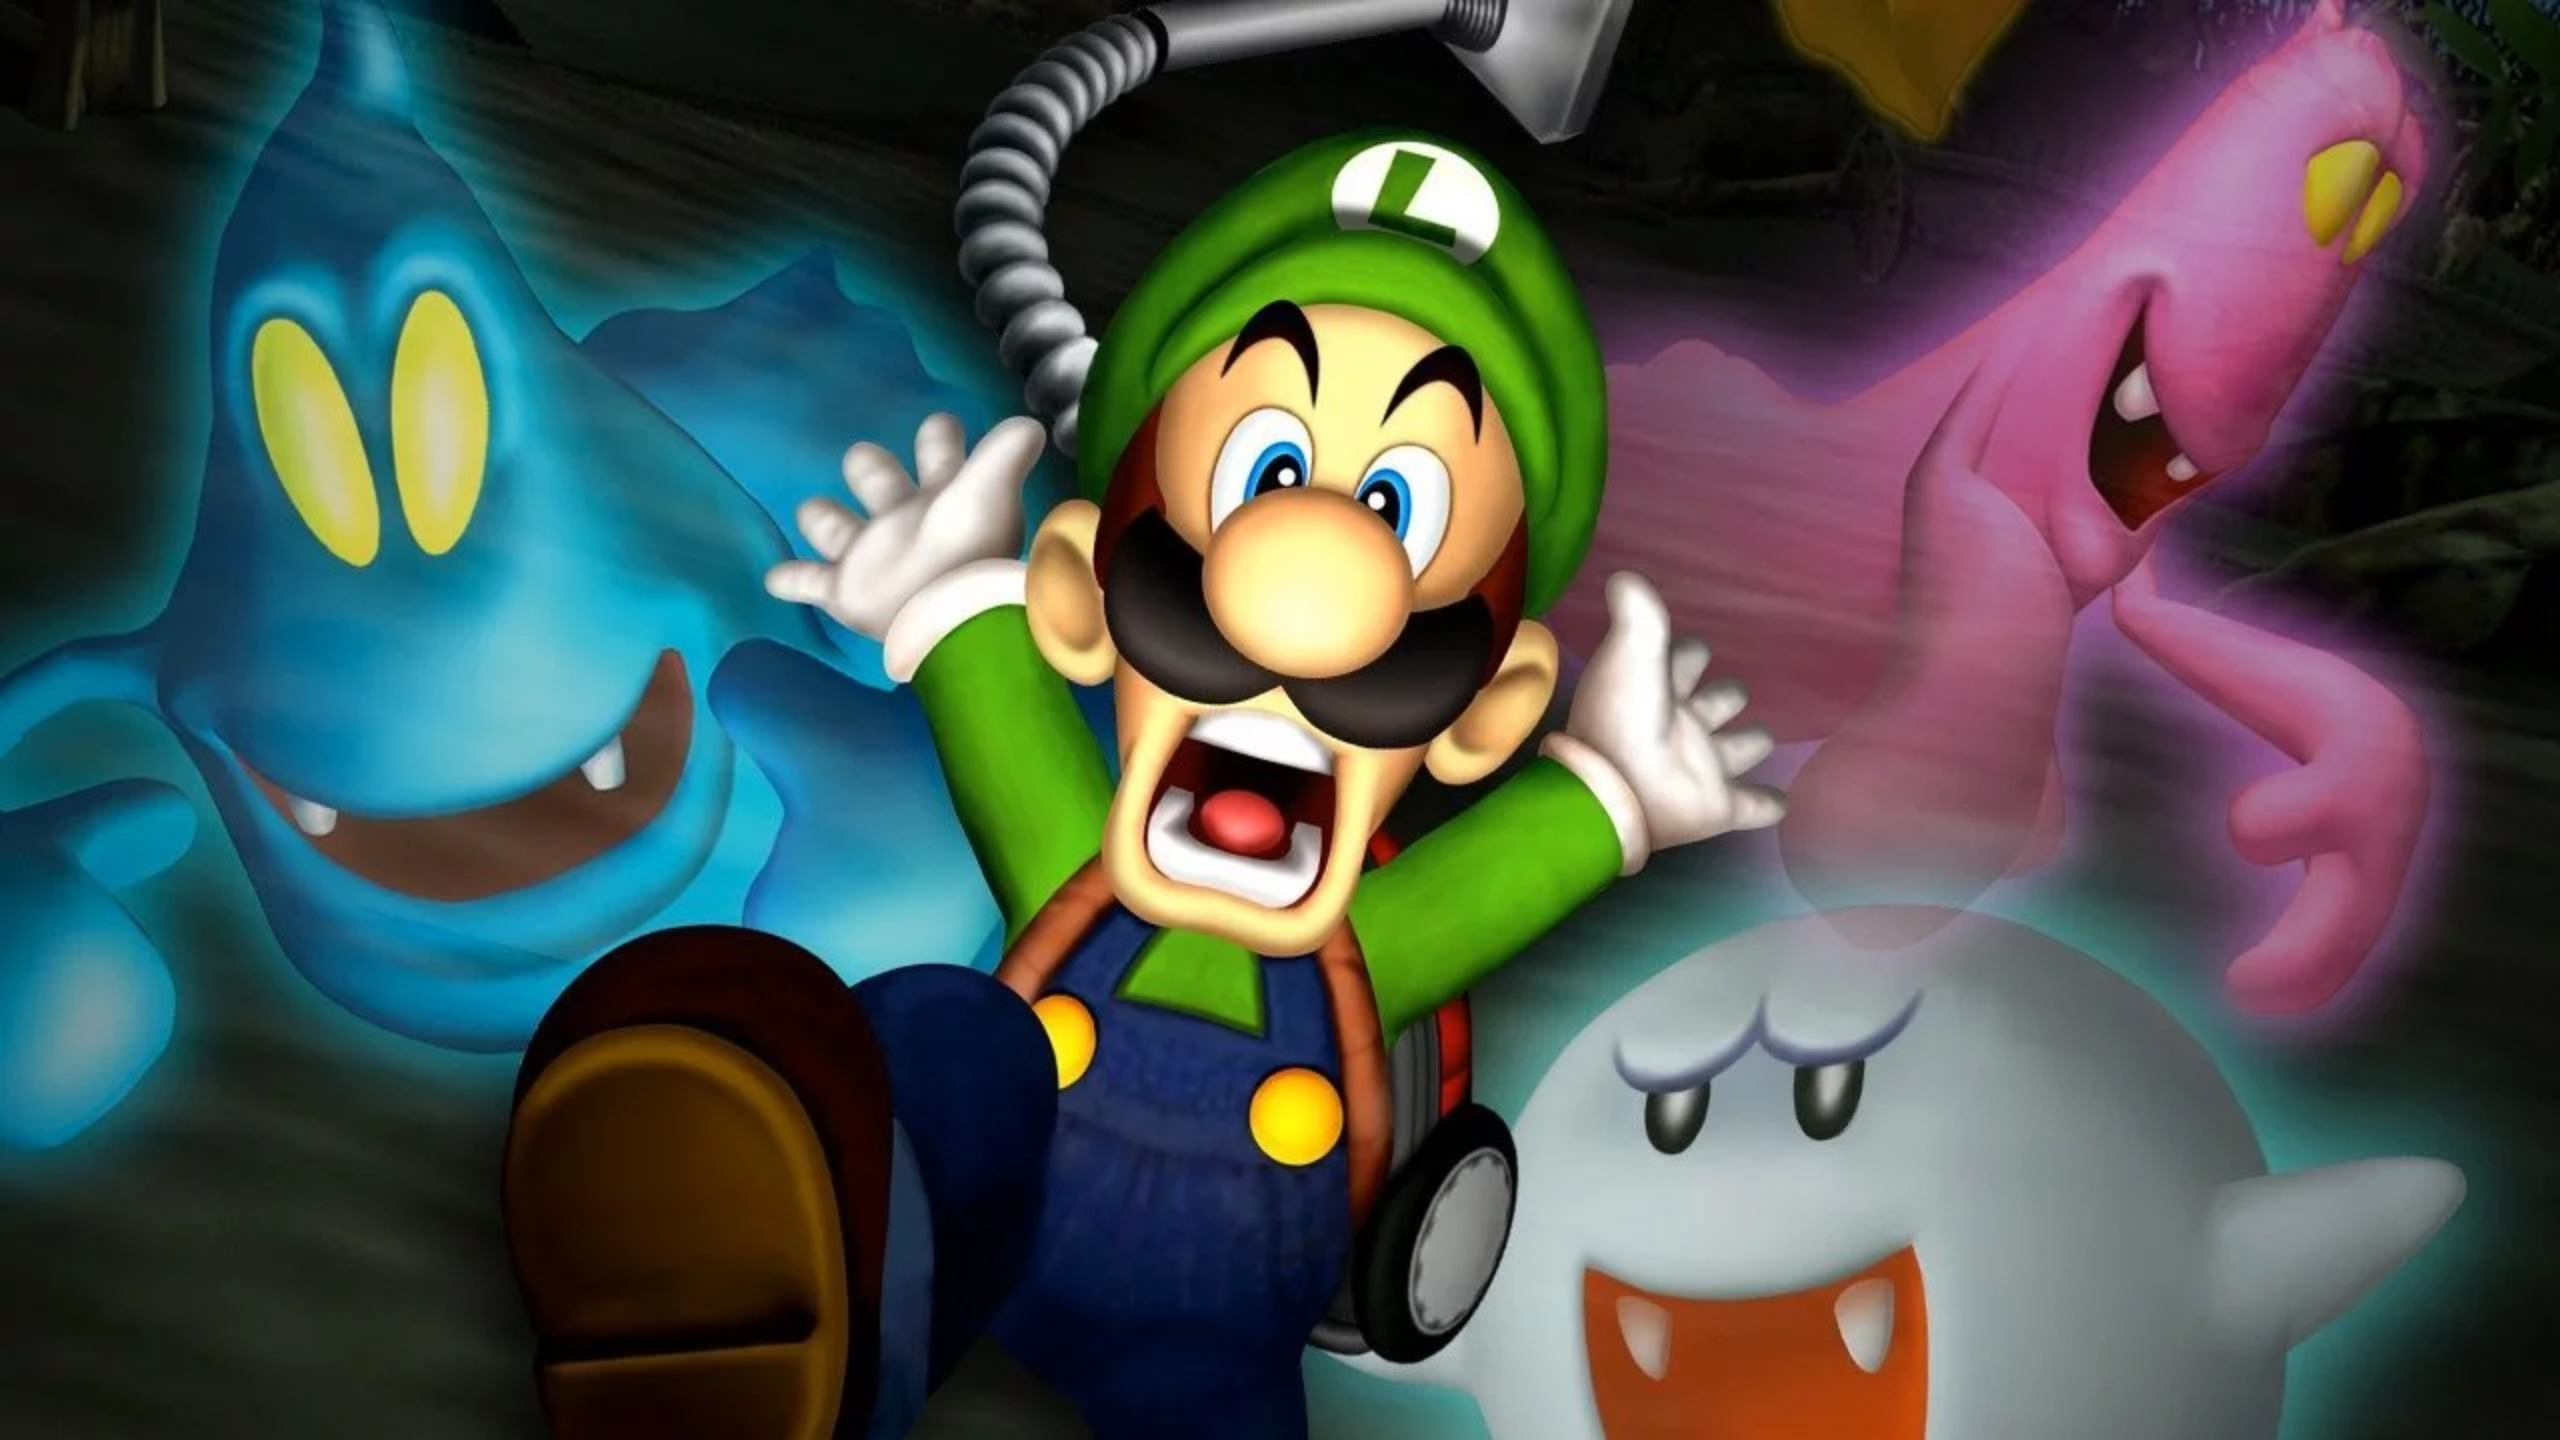 Image for Luigi's Mansion 3DS: GameCube Port or Full Mobile Remake?